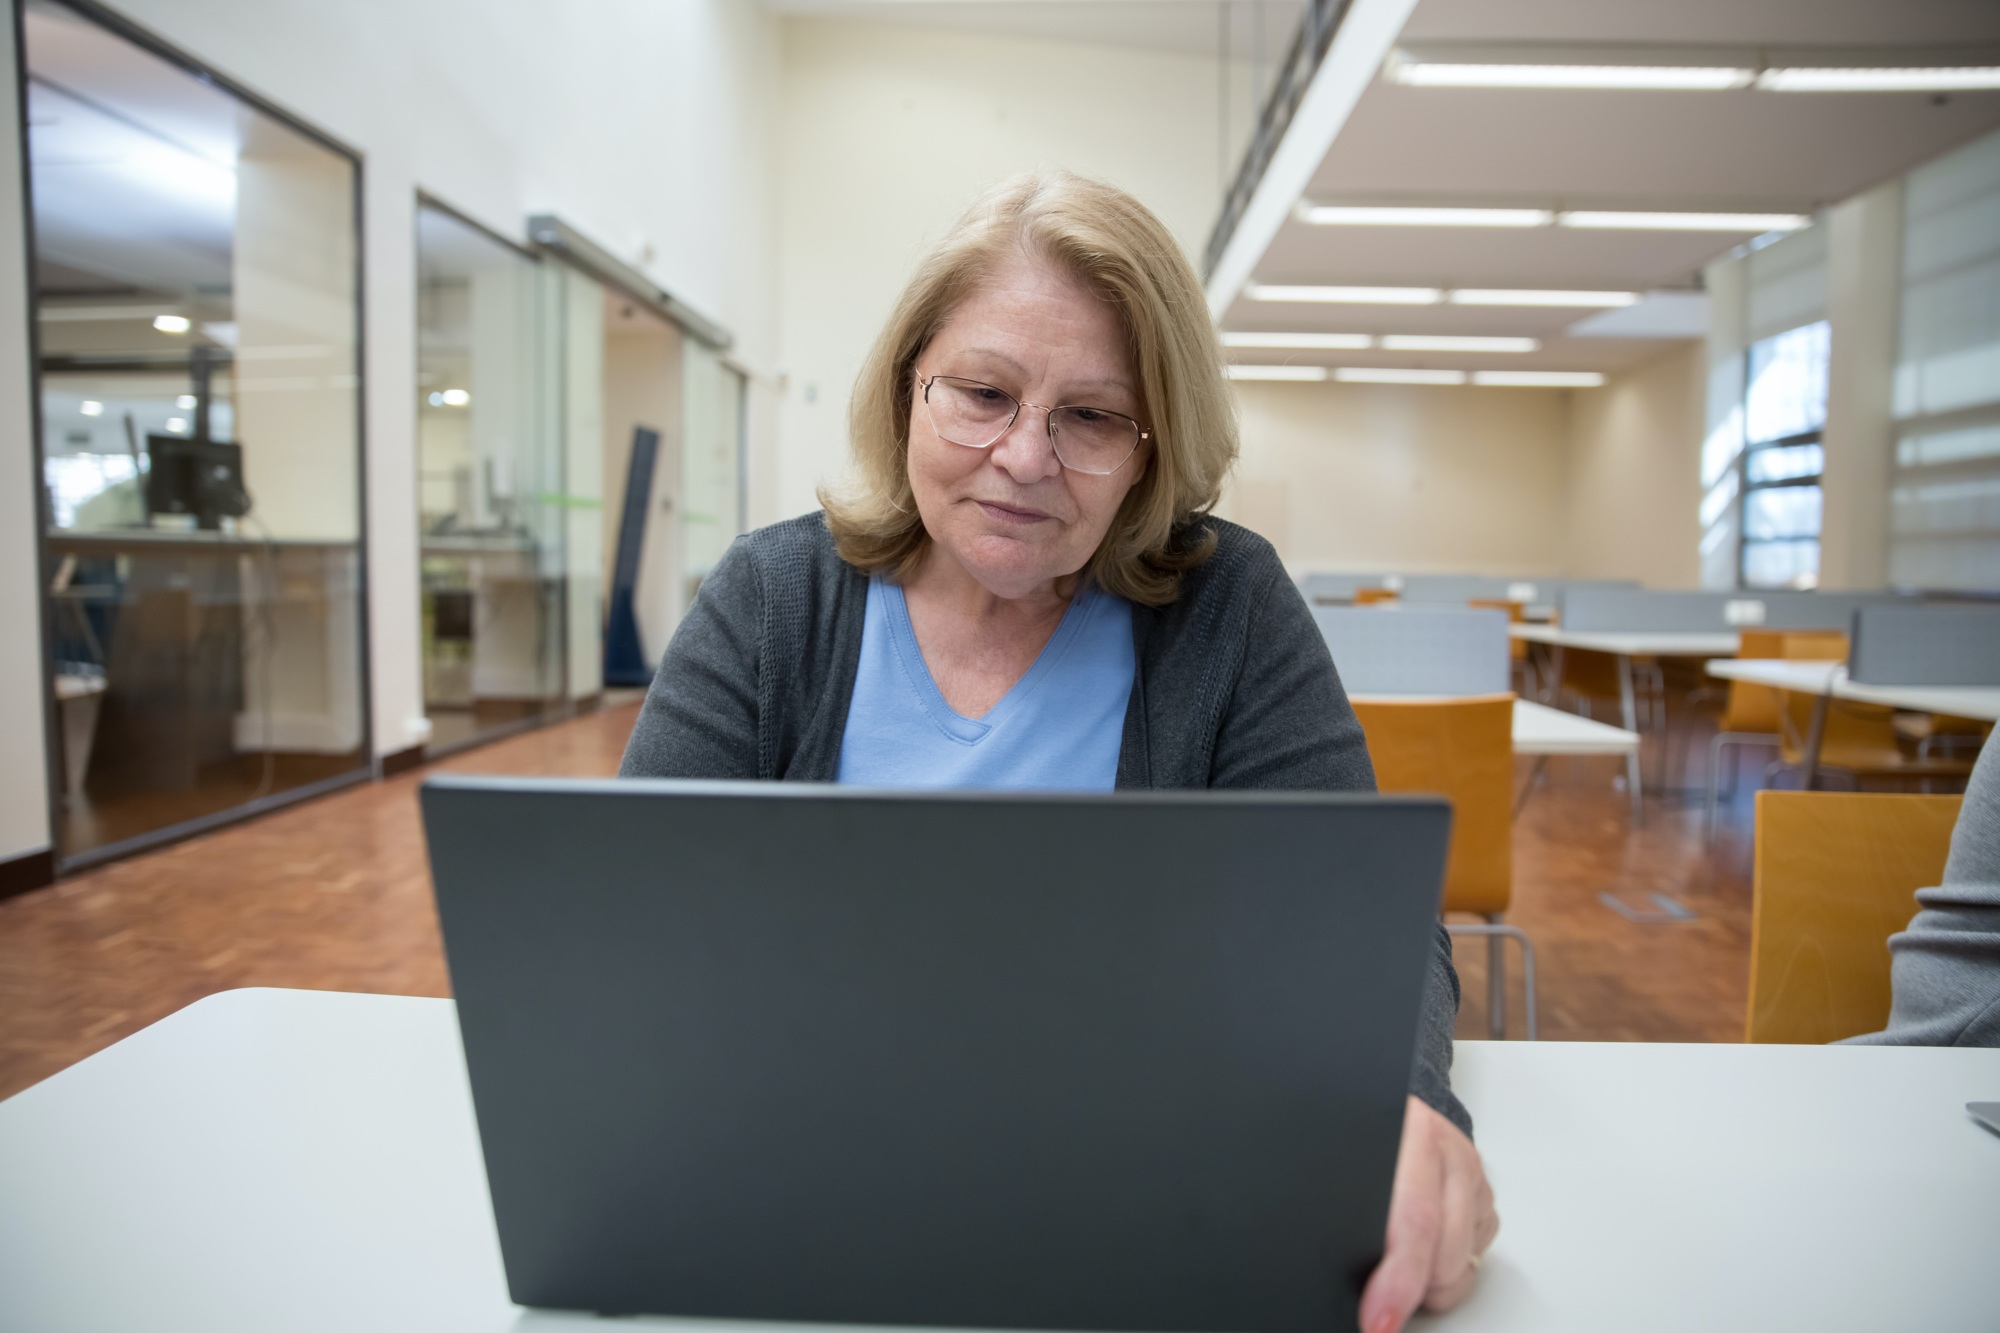 A teacher looking at a laptop screen